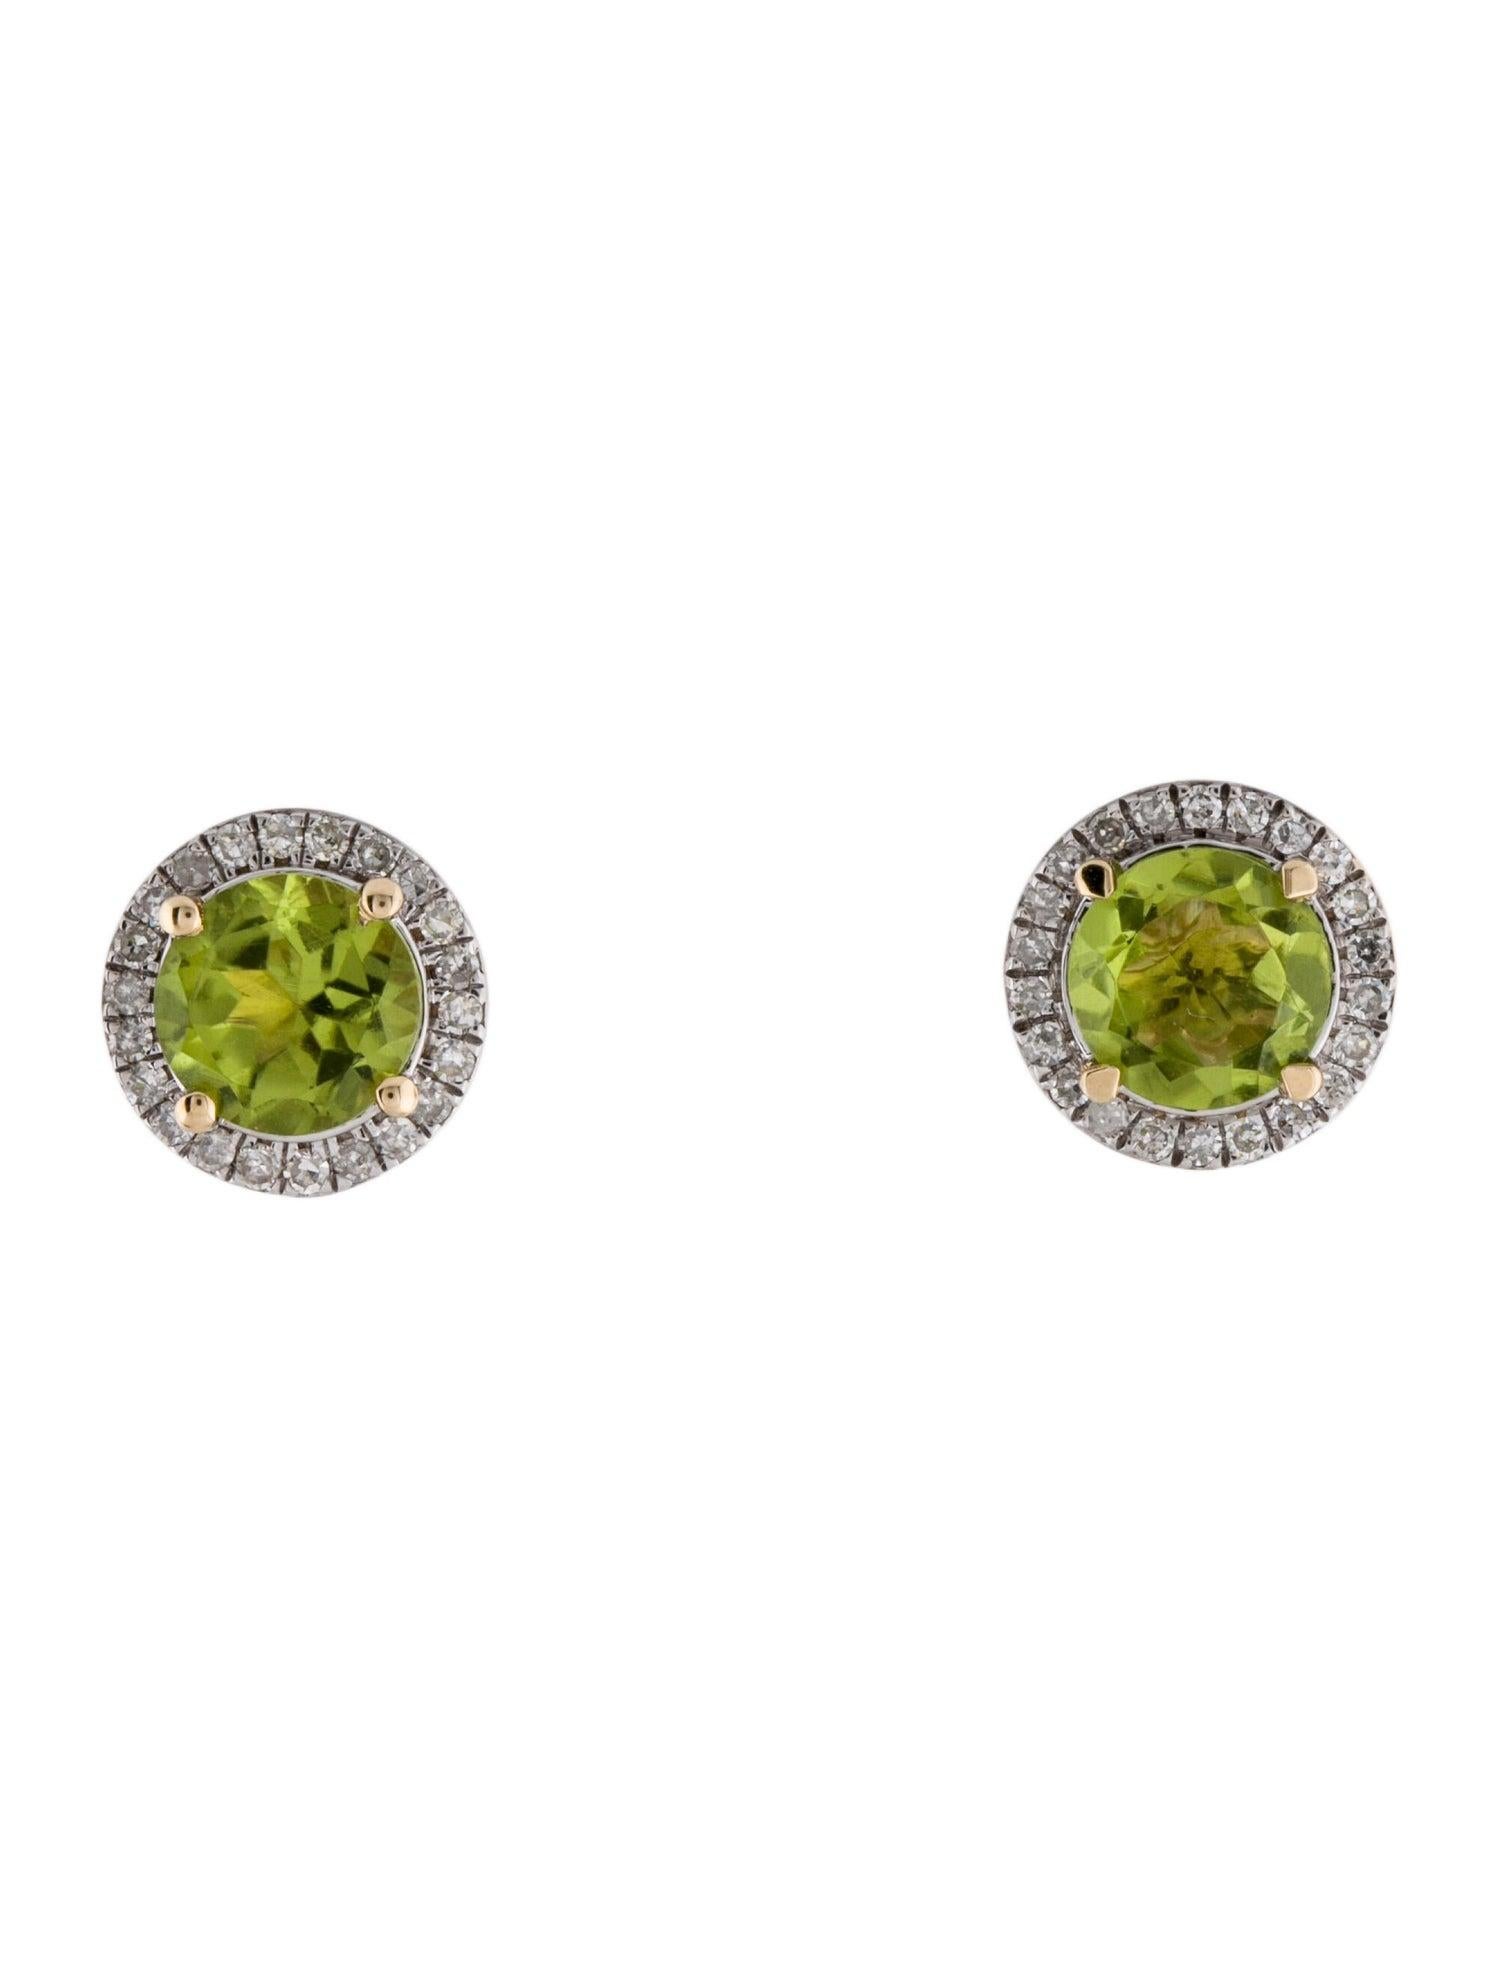 Erhöhen Sie Ihren Stil mit den exquisiten Harmony in Green Peridot and Diamond Earrings von Jeweltique. Diese mit Präzision und Leidenschaft gefertigten Ohrringe sind ein Beweis für das Engagement unserer Marke für Qualität und von der Natur